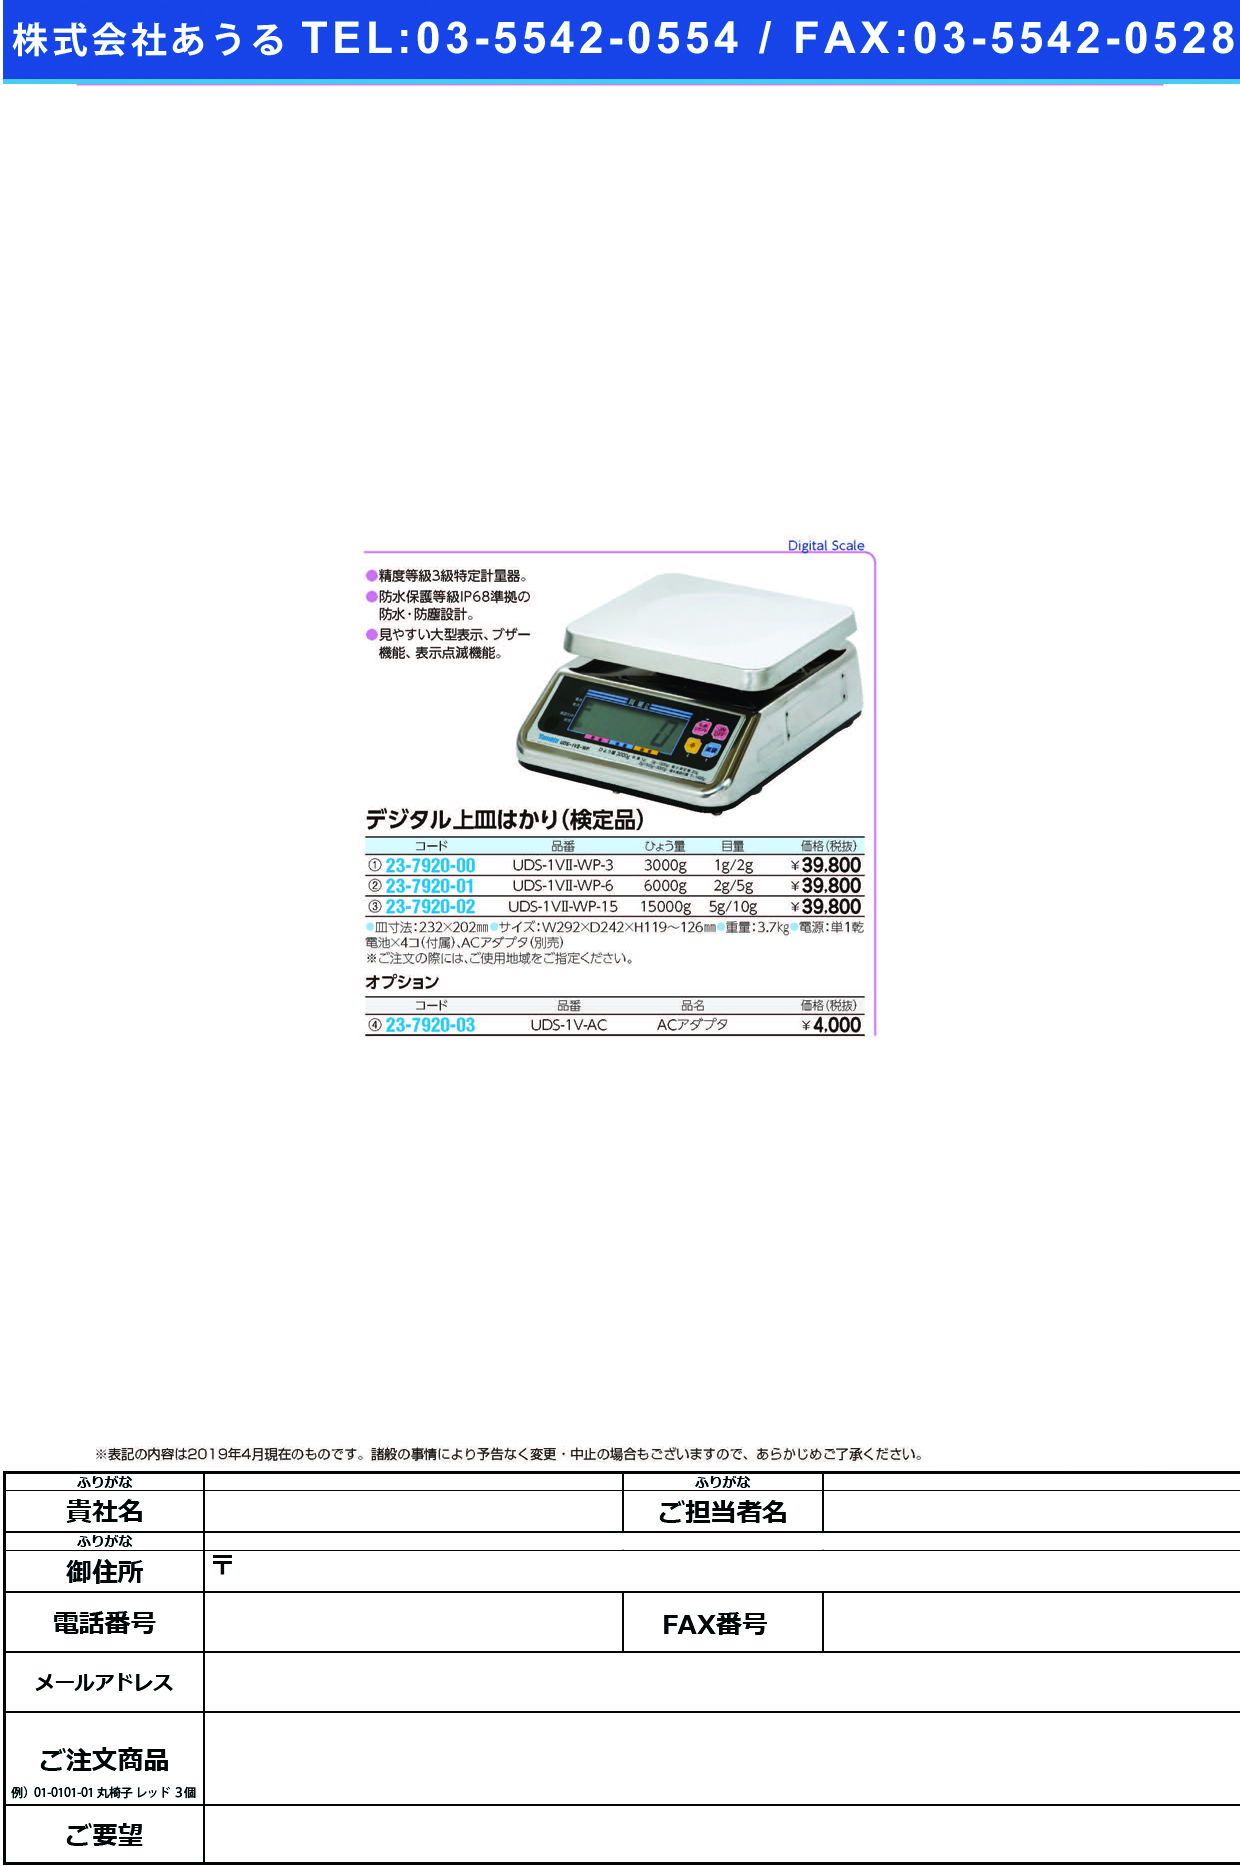 完全防水型デジタル式はかり（検定品） UDS-1V2-WP-3(3KG) ﾎﾞｳｽｲﾃﾞｼﾞﾀﾙﾊｶﾘｹﾝﾃｲﾋﾝ